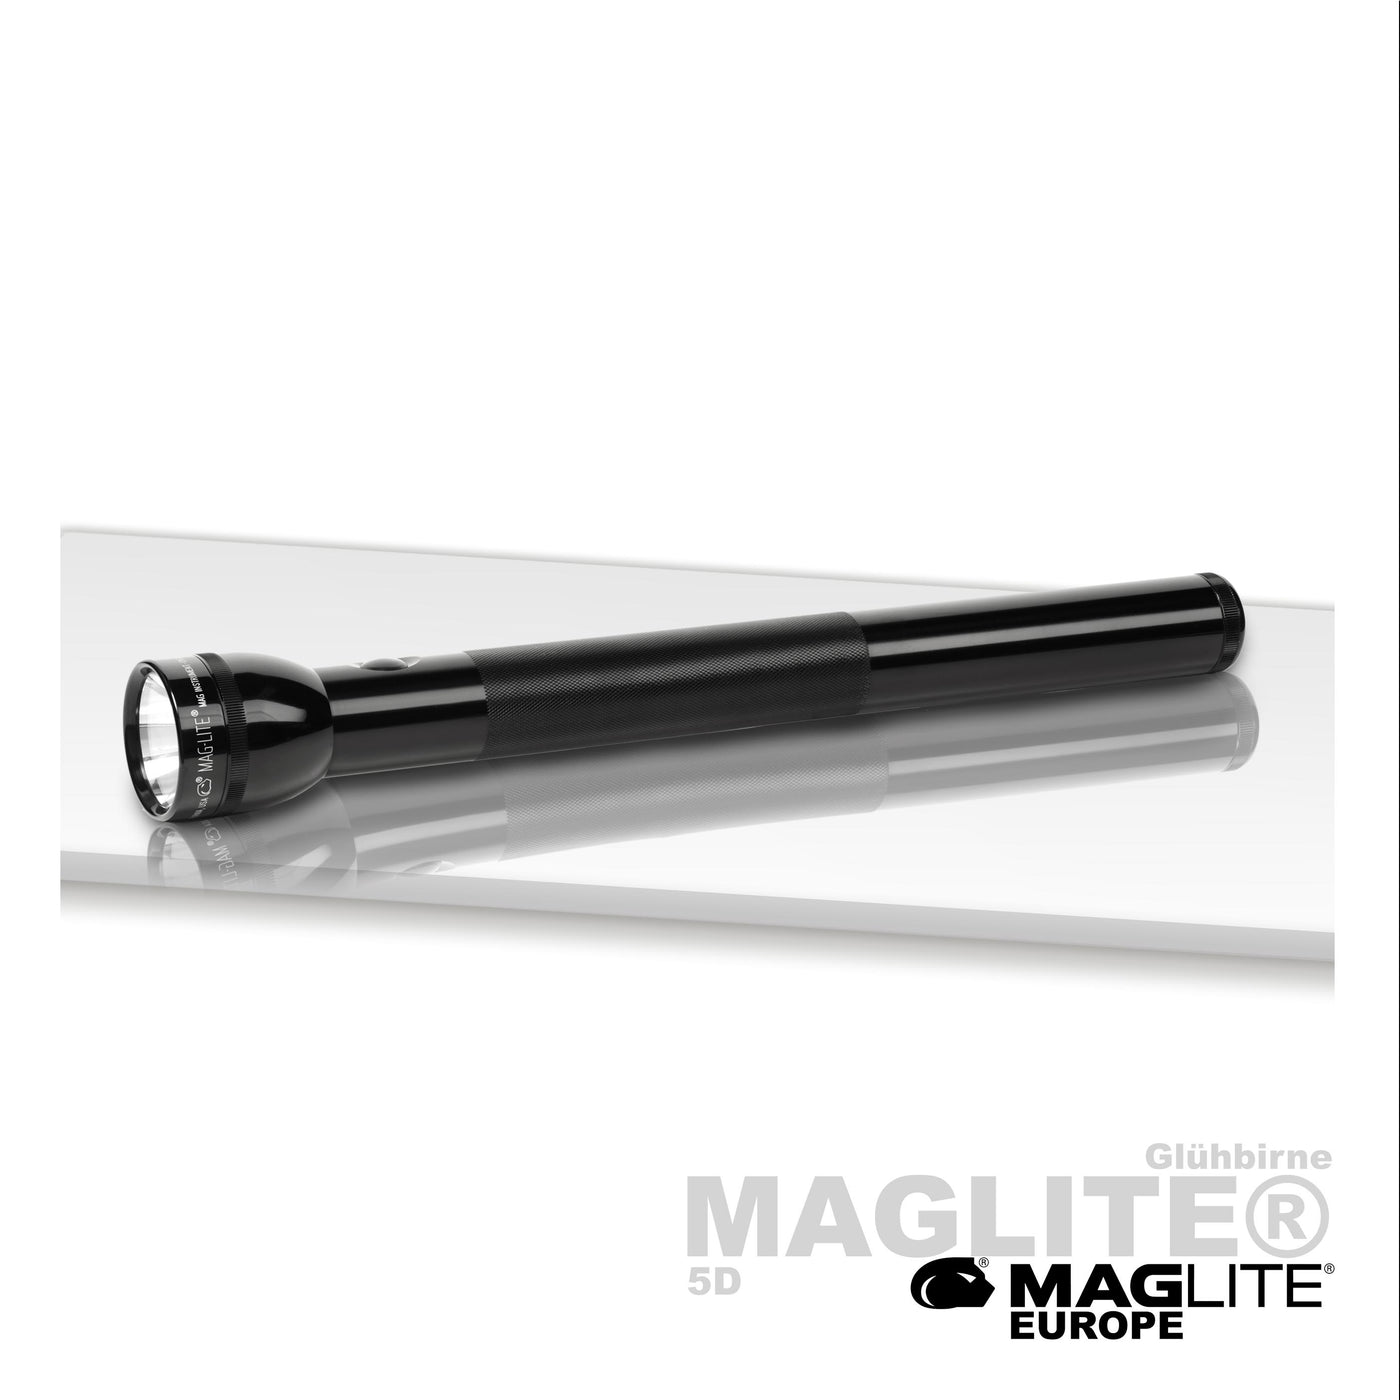 Maglite® 5D Xenon